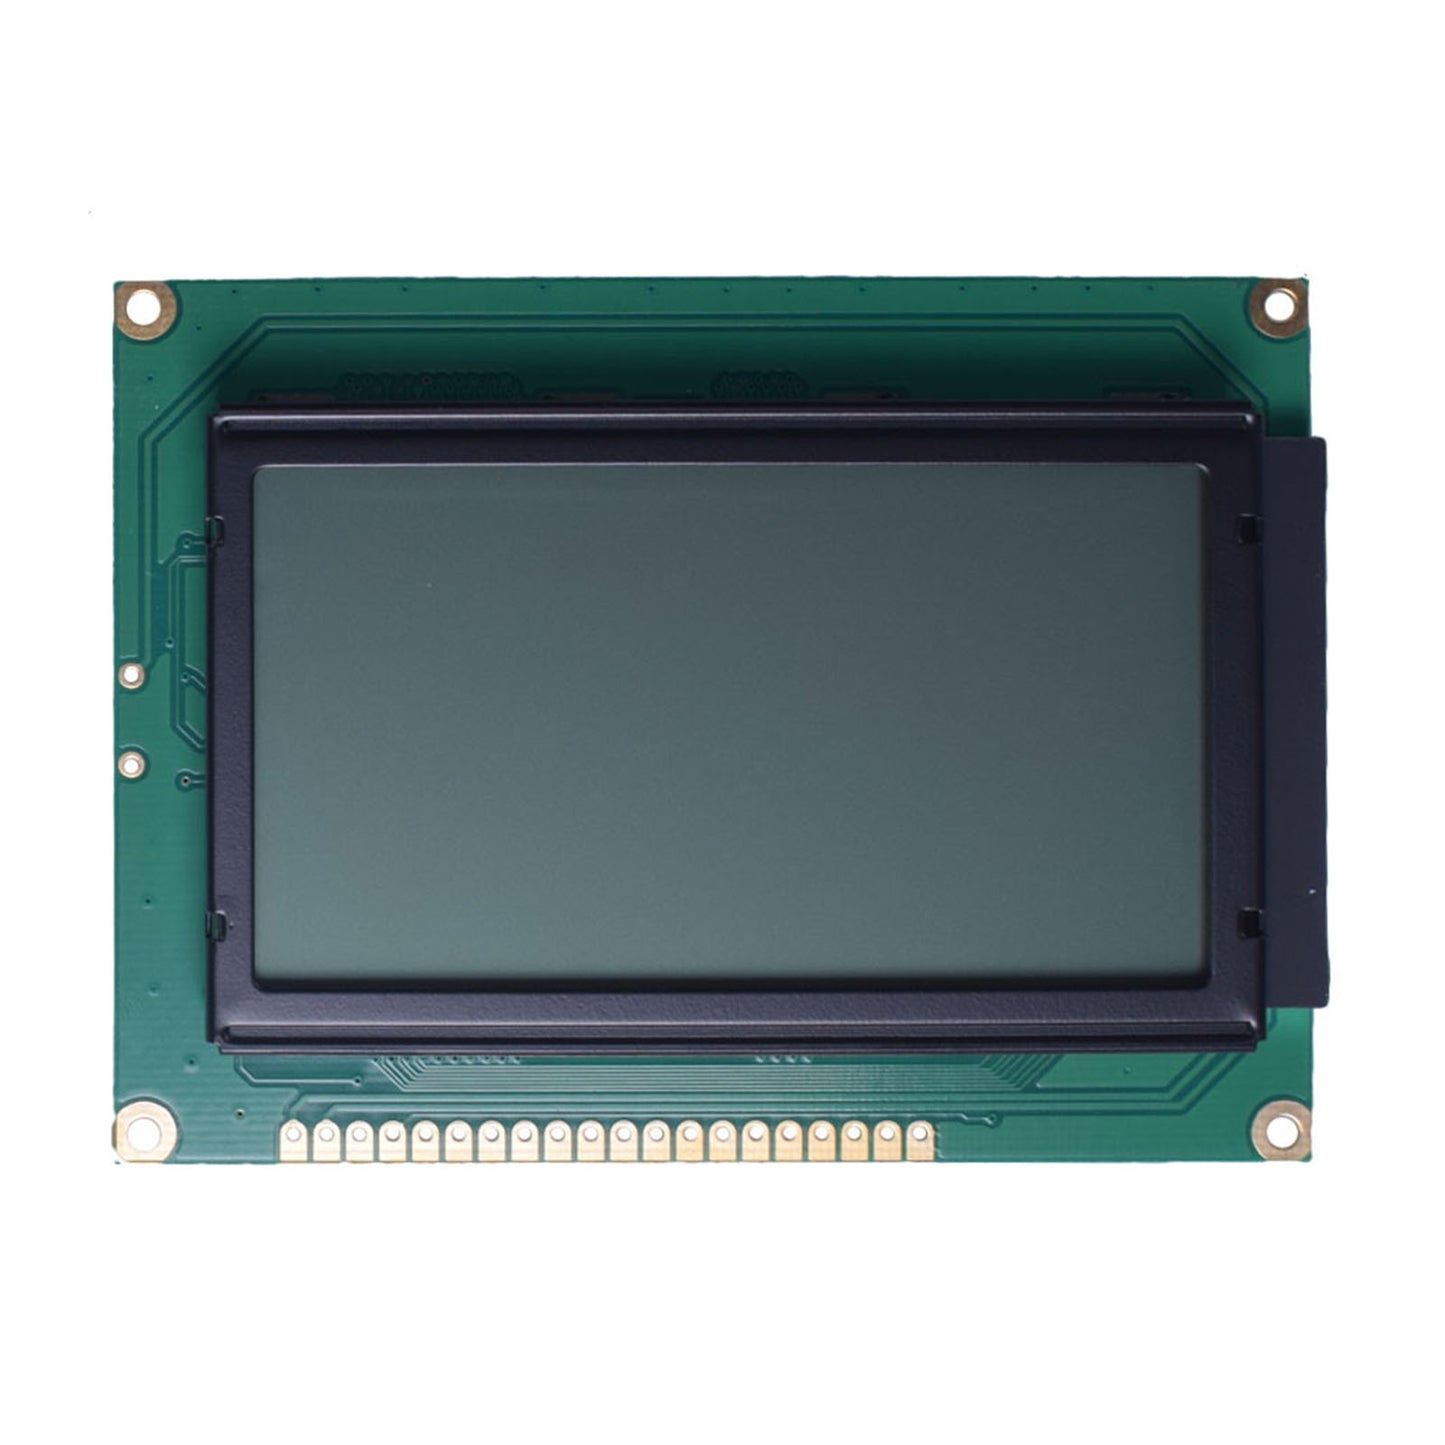 DisplayModule 3.24" 128x64 Large Graphic LCD - MCU